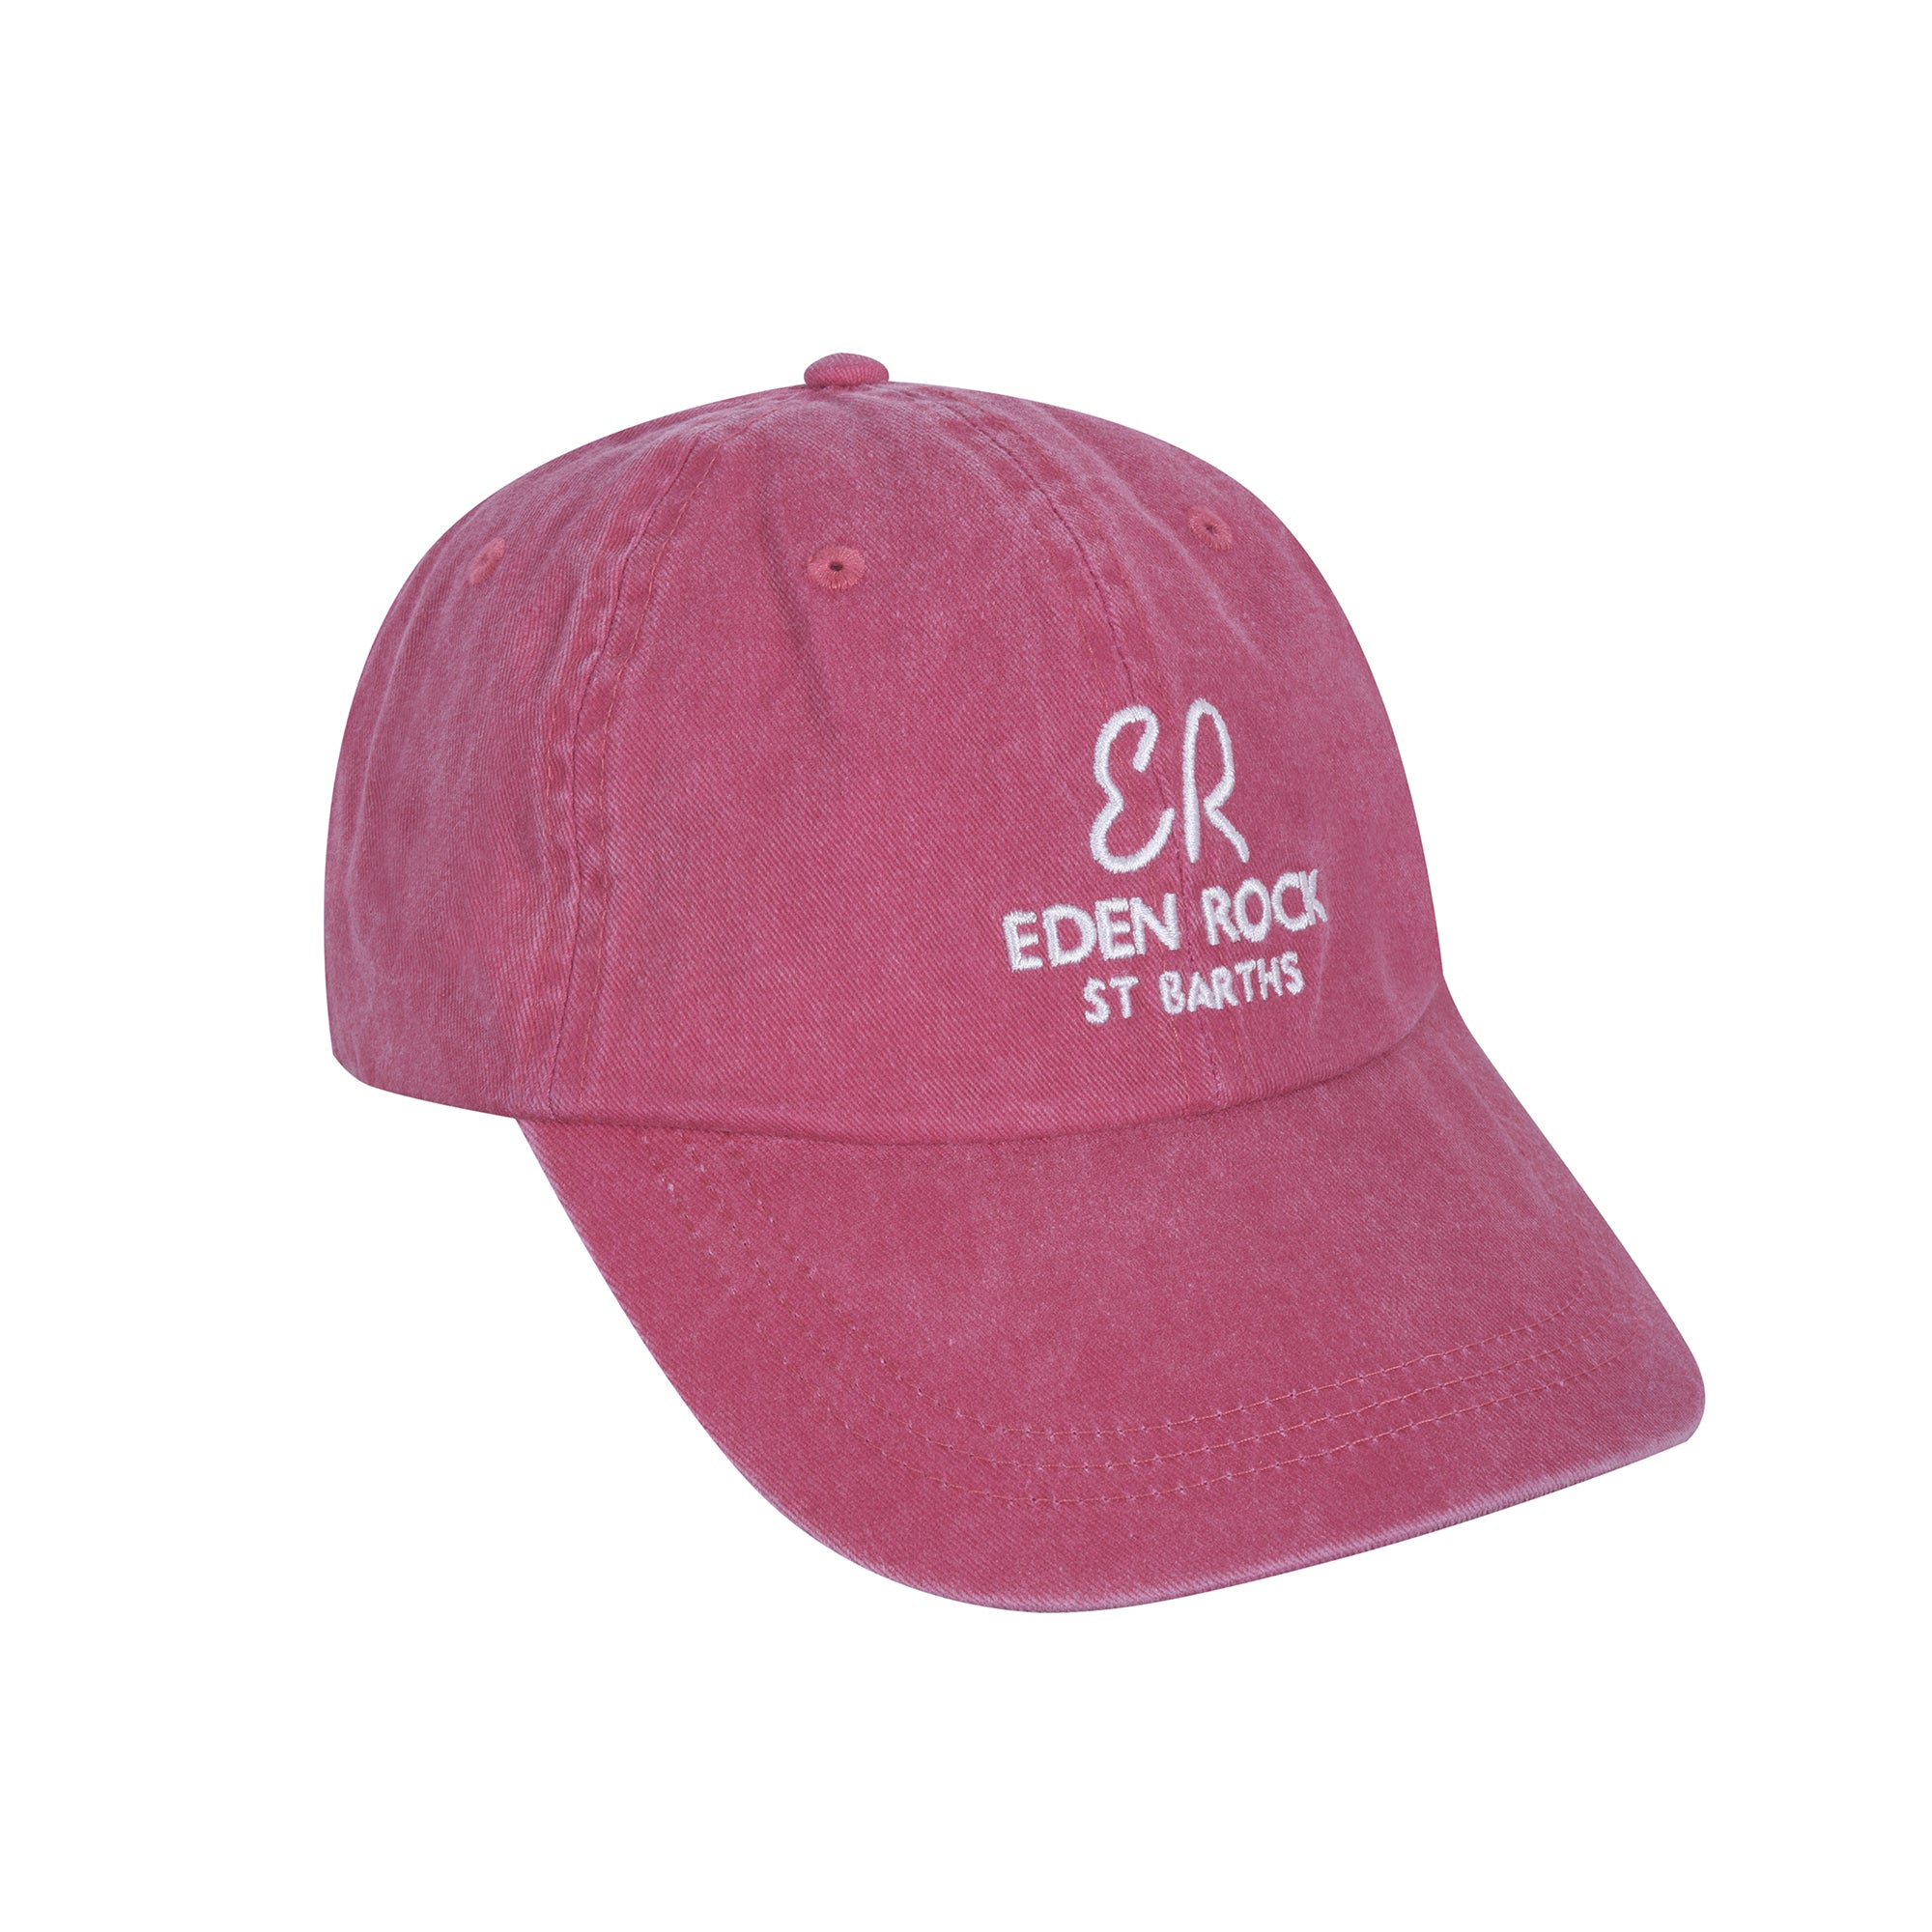 Rock Eden - St Cap Baseball Barths